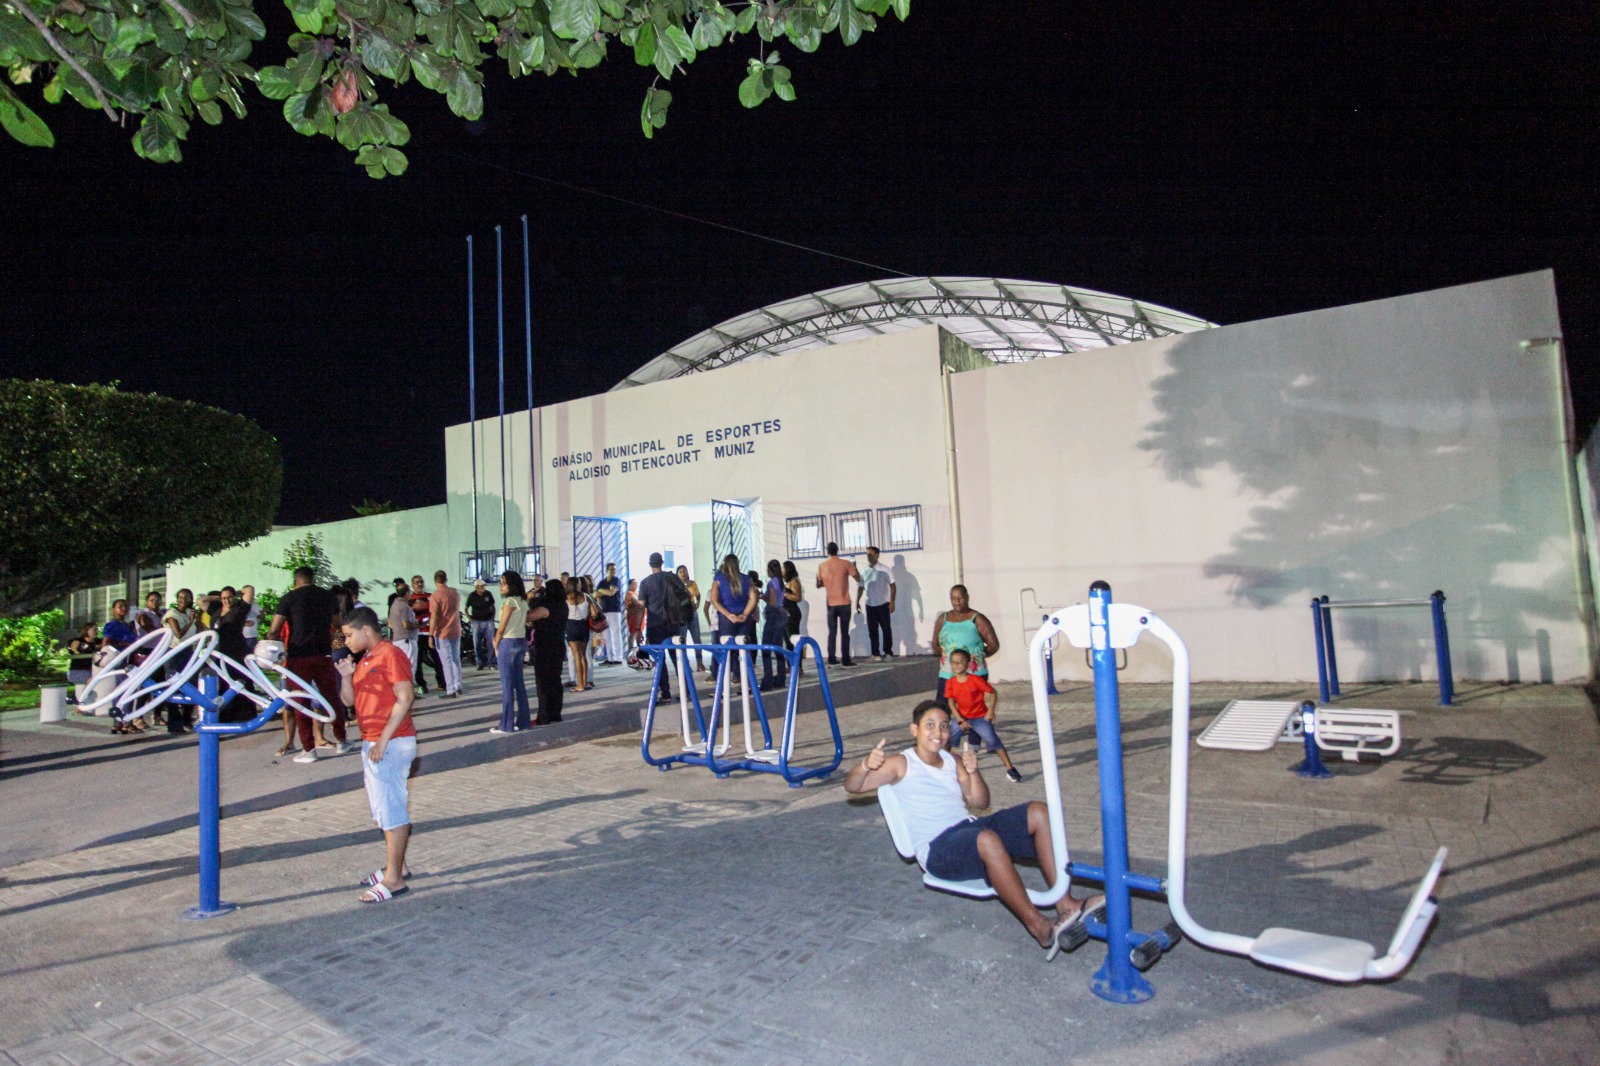 Prefeitura de Santo Antônio de Jesus realizou inauguração do novo Ginásio Municipal de Esportes Aloísio Bittencourt Muniz